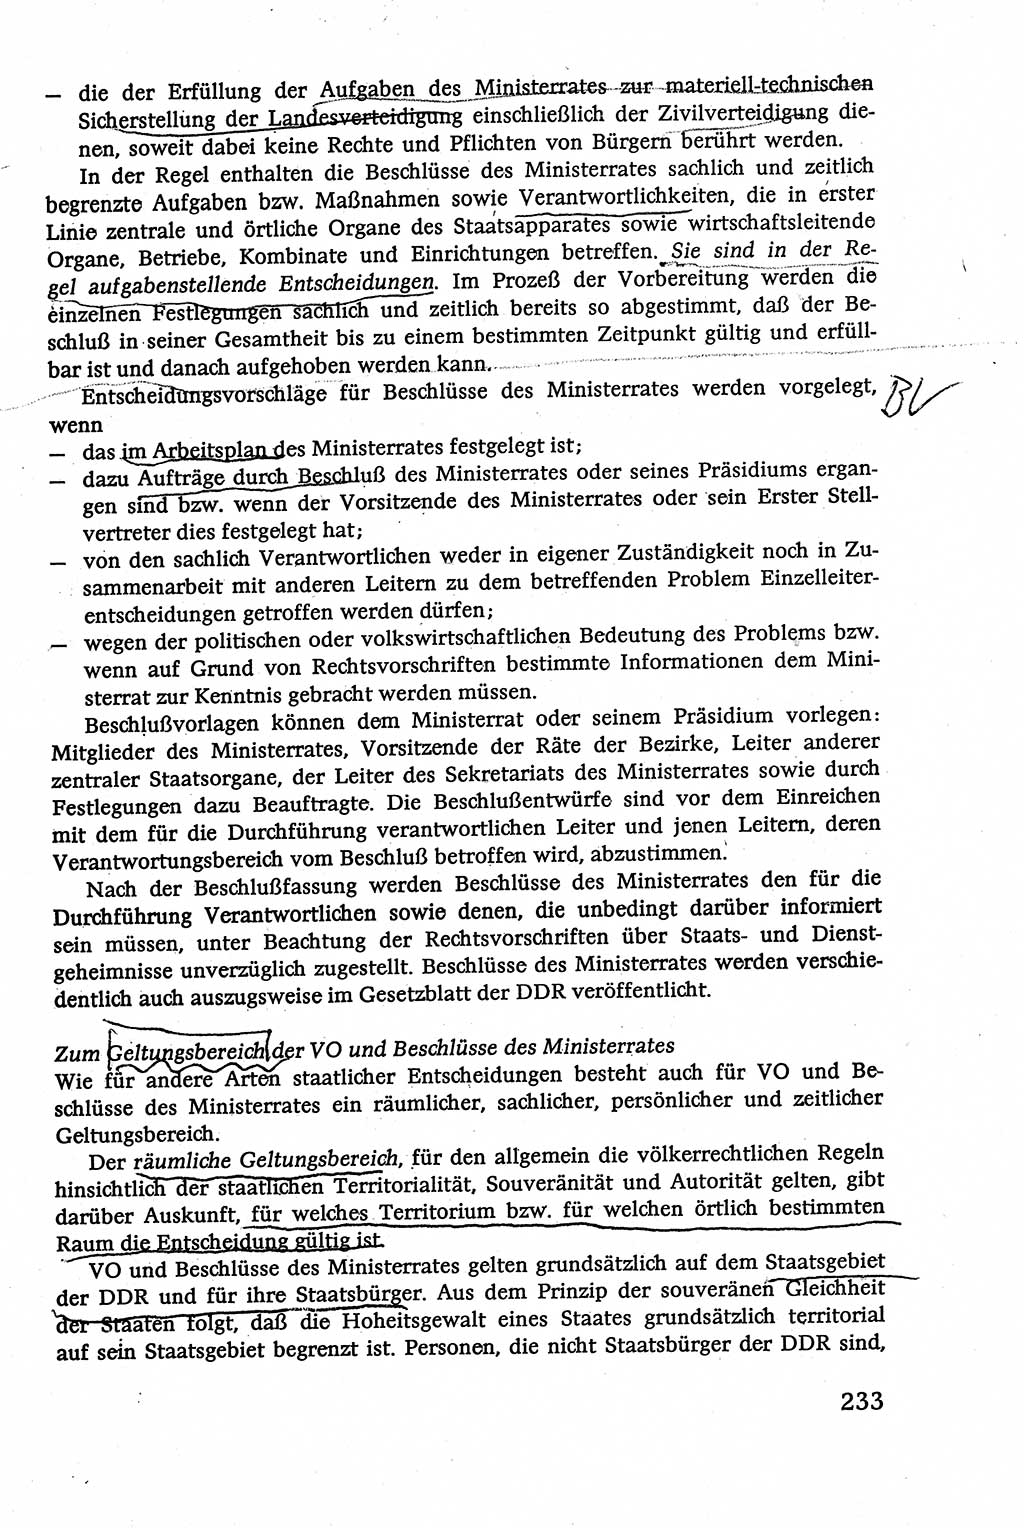 Verwaltungsrecht [Deutsche Demokratische Republik (DDR)], Lehrbuch 1979, Seite 233 (Verw.-R. DDR Lb. 1979, S. 233)